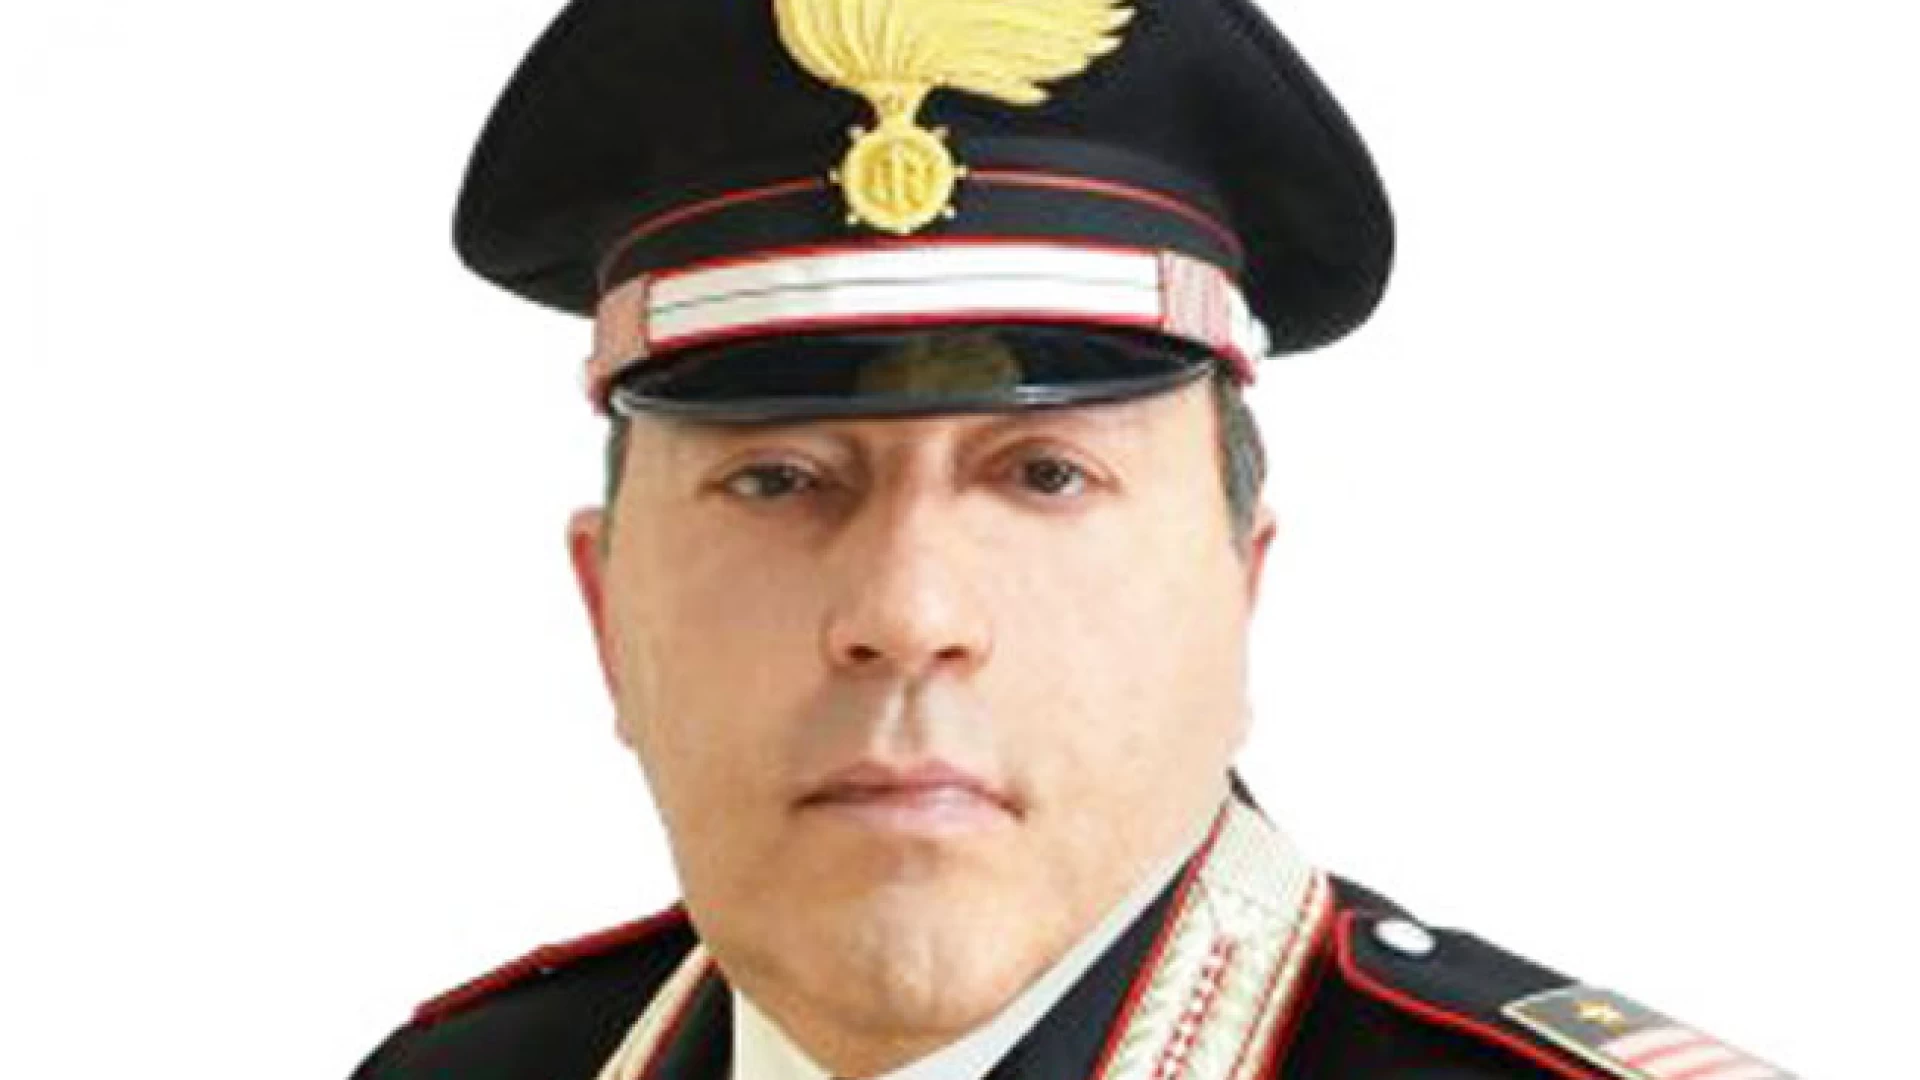 Isernia: Il Luogotenente Massimo La Boccetta, Comandante della Centrale Operativa dei Carabinieri di Isernia, dopo quarant’anni lascia il servizio attivo nell’Arma.